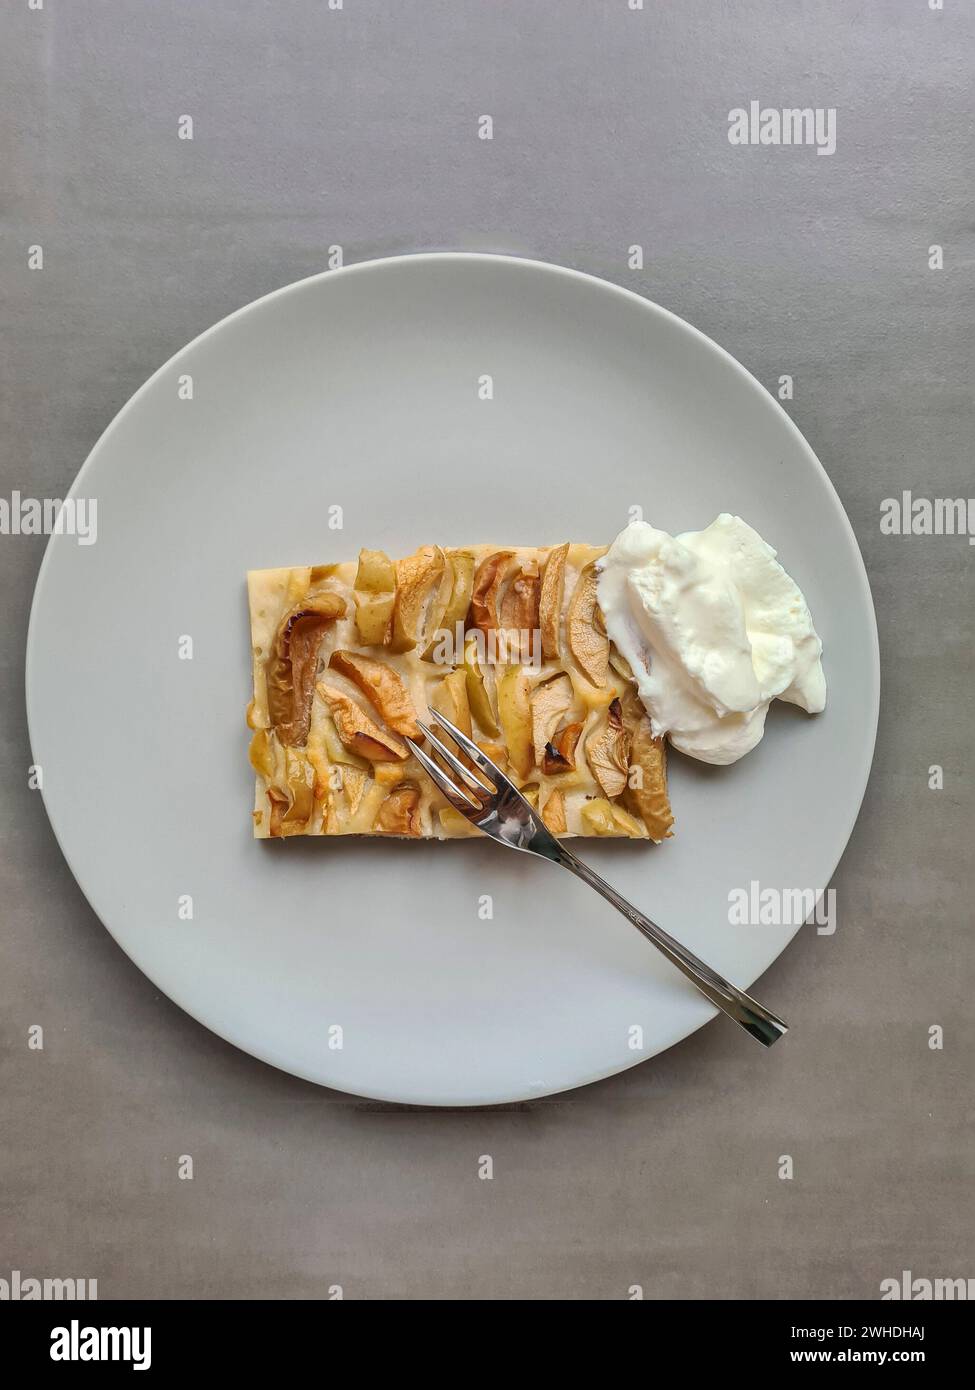 Una fetta di torta di mele con panna servita su un piatto con una forchetta Foto Stock